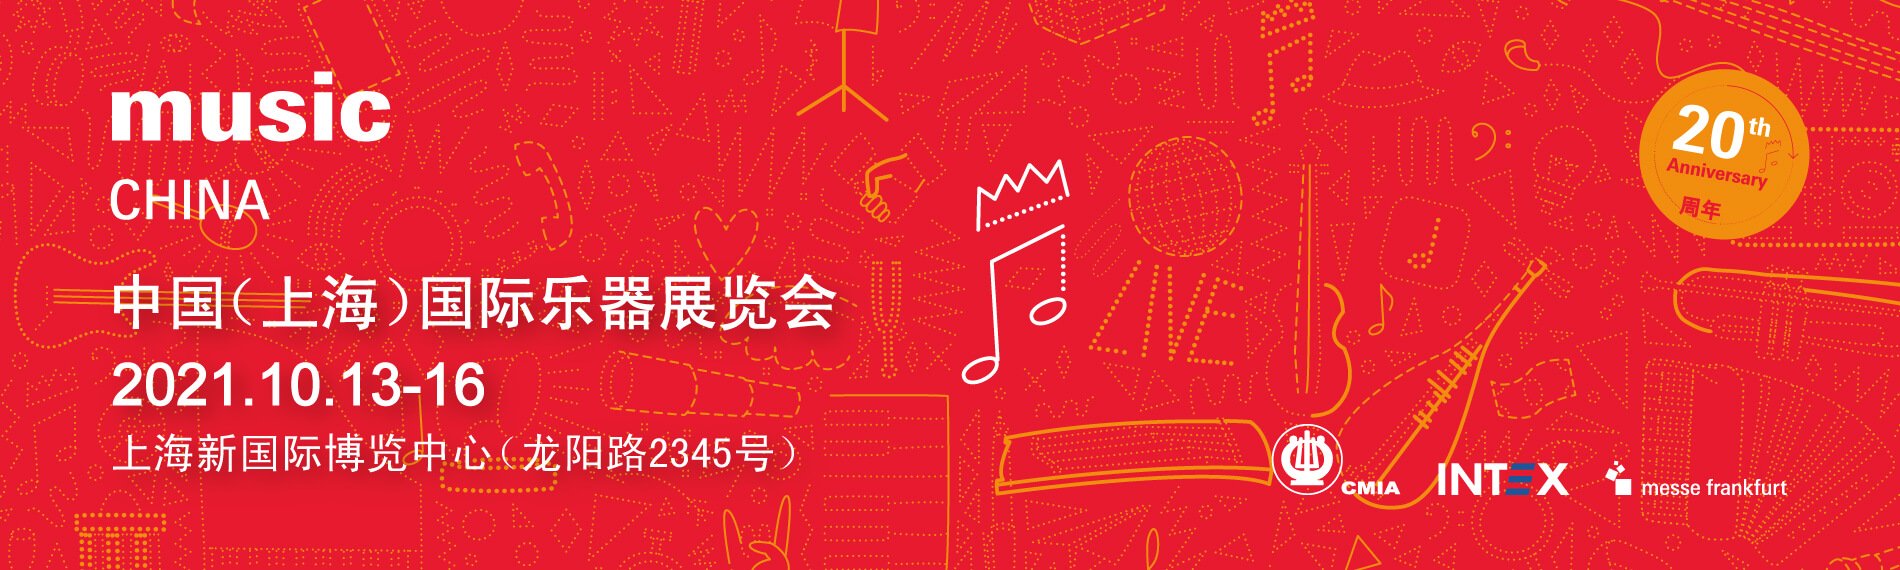 Music China 2021 au plus grand salon mondial des instruments de musique